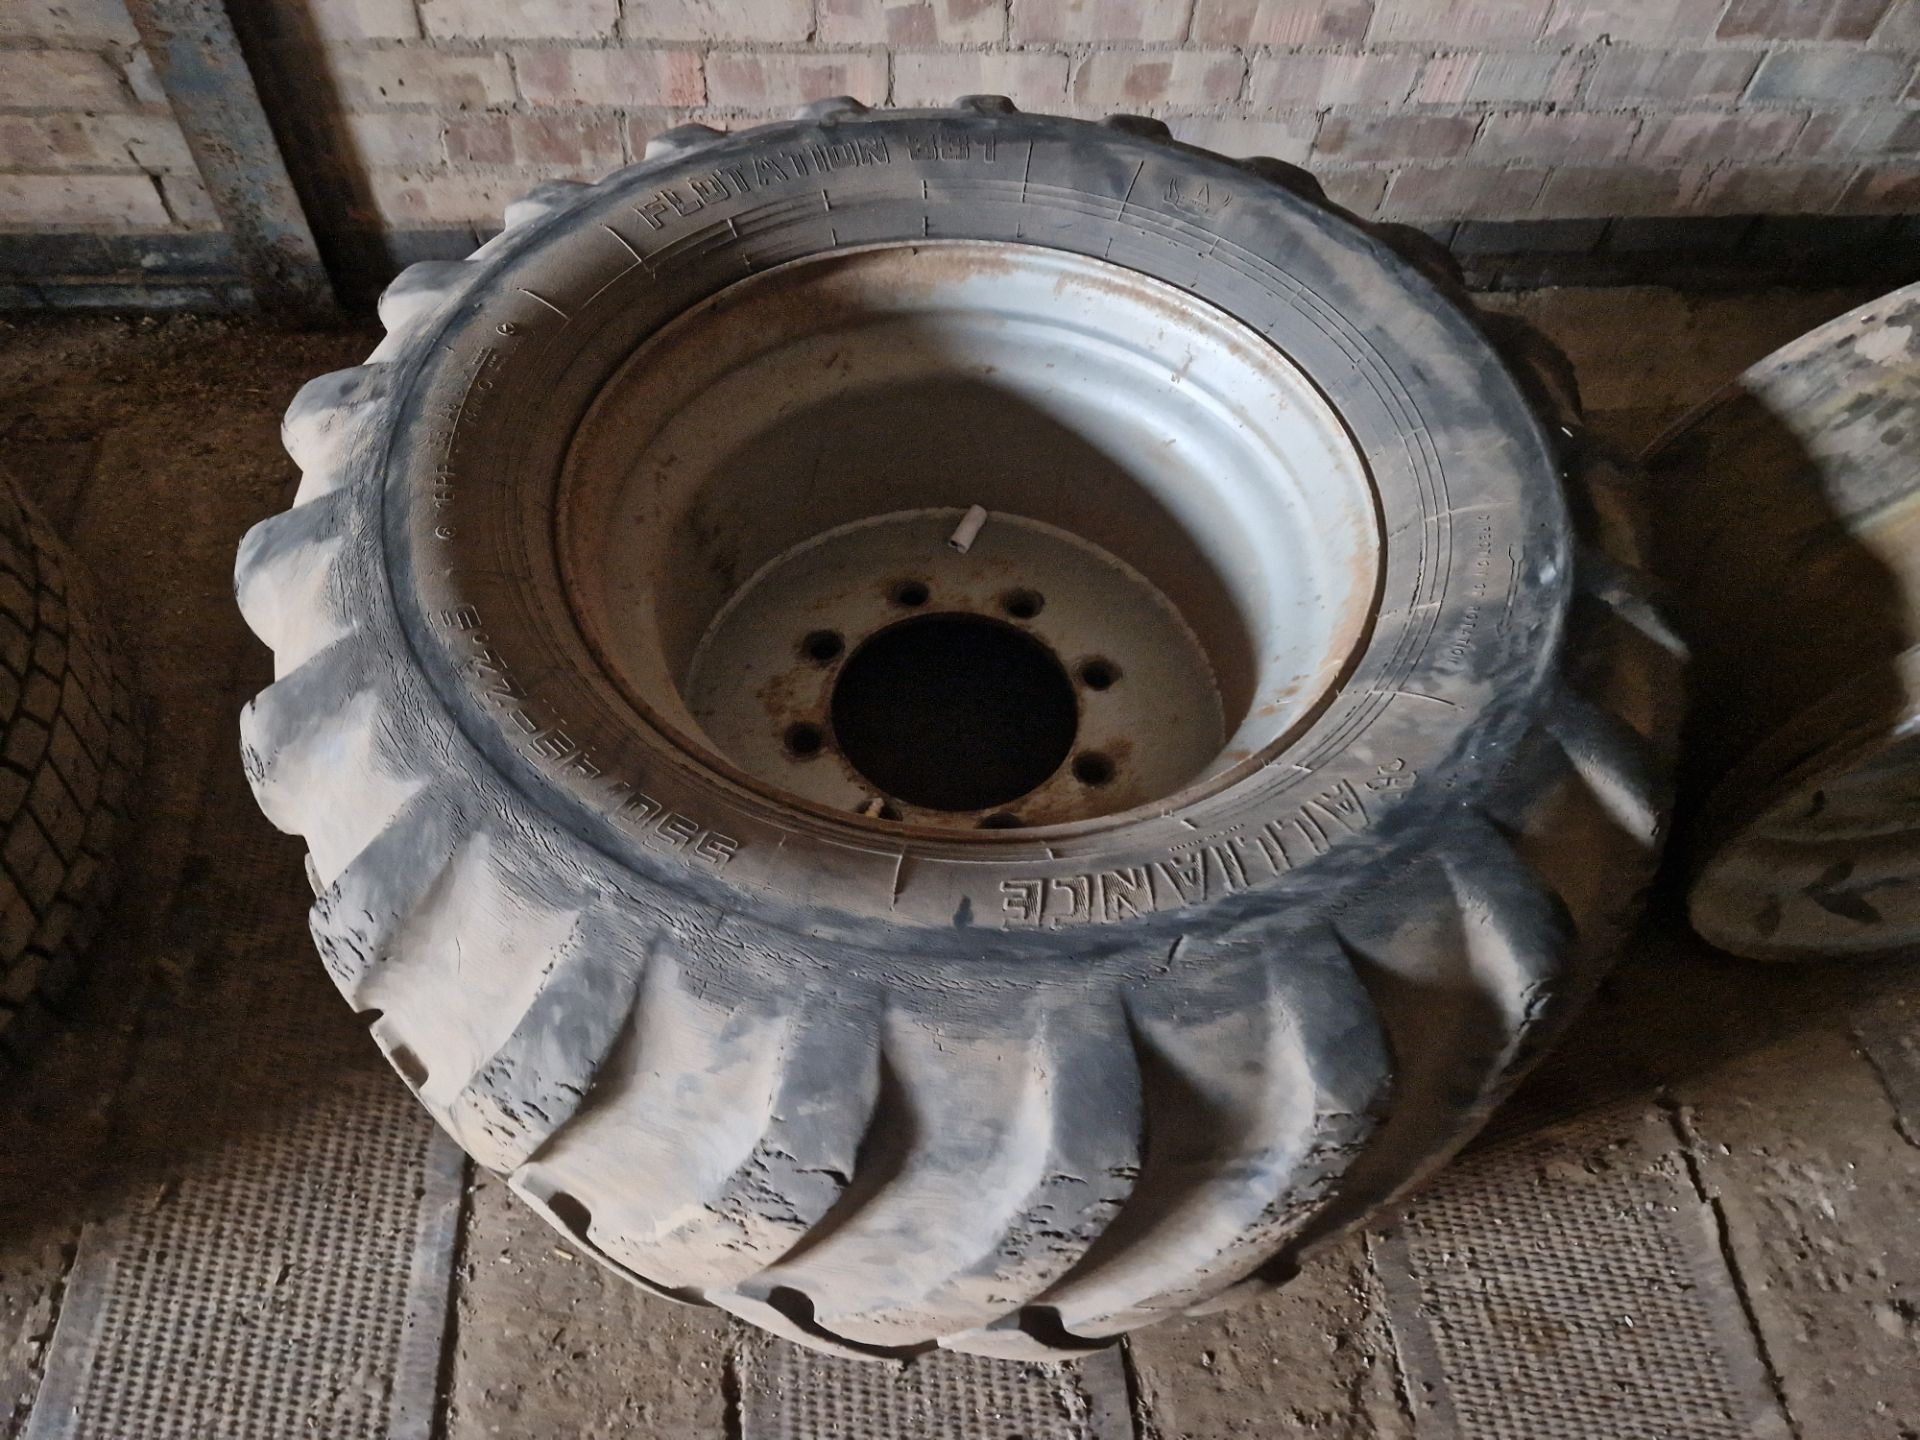 Alliance 550/45 R22.5 tyre on 8 stud rim